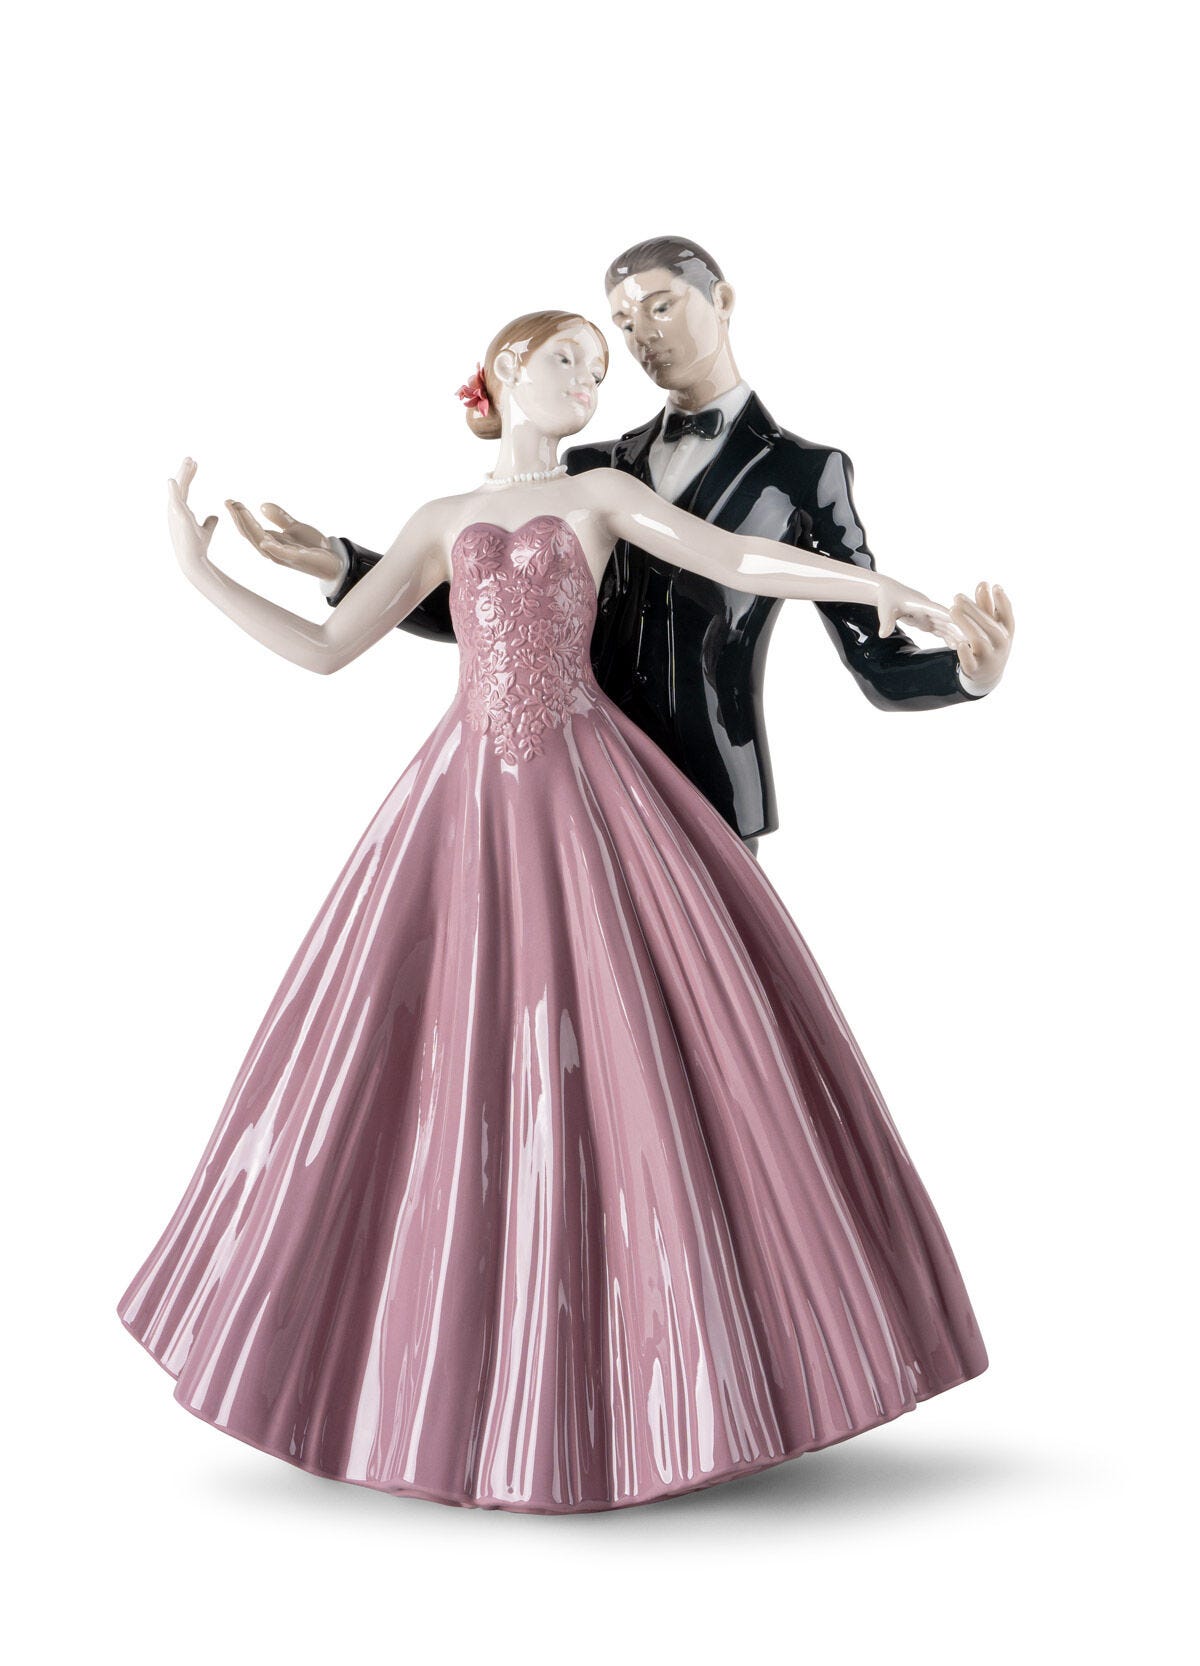 Anniversary Waltz Sculpture Couple Figurine